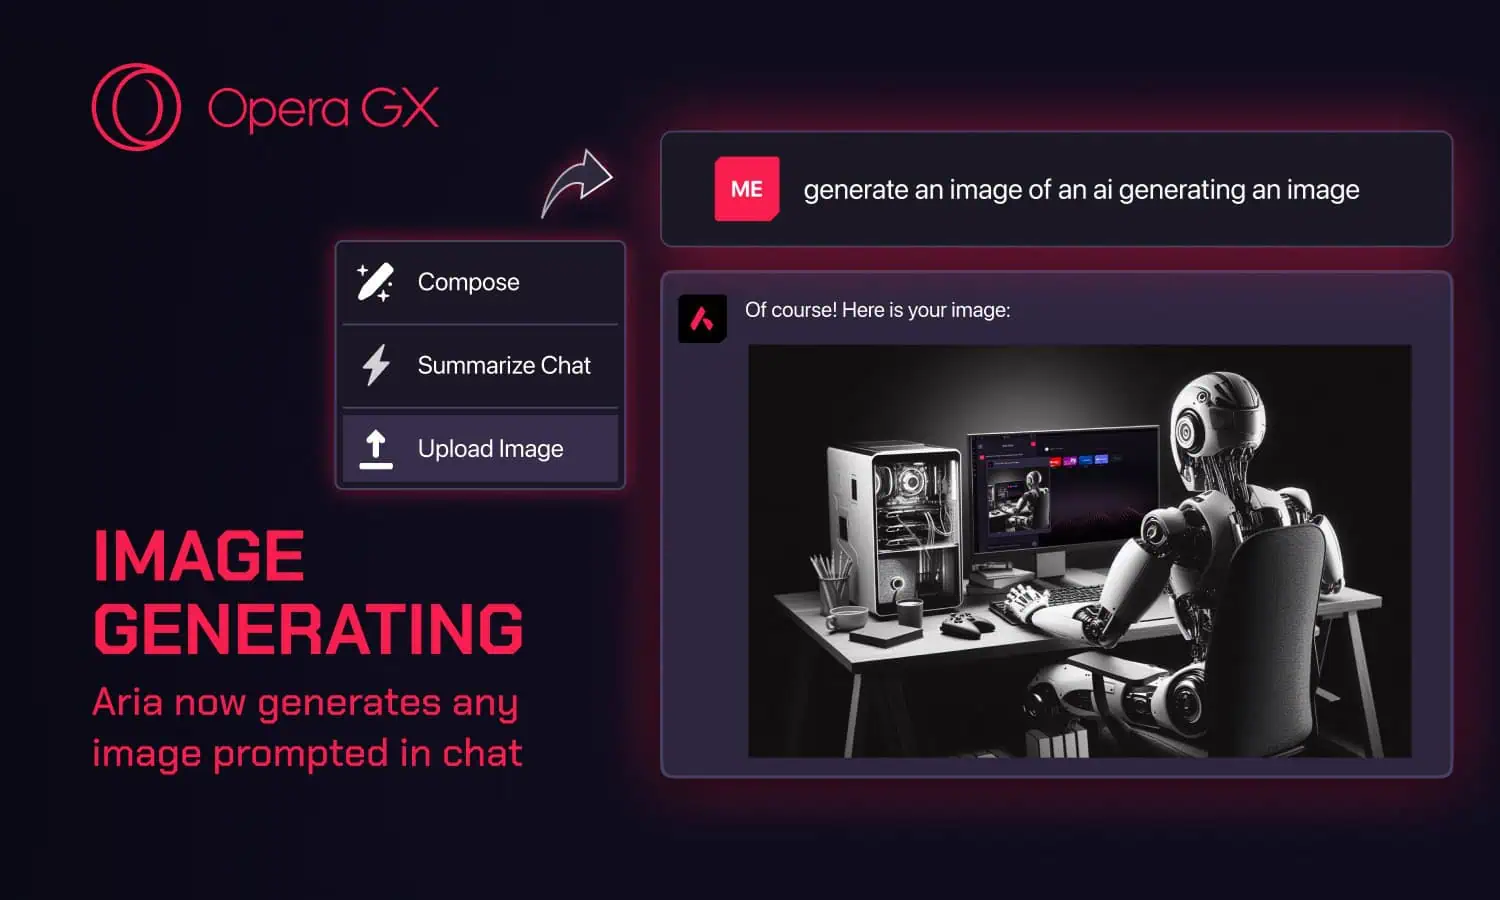 Opera GX AI update